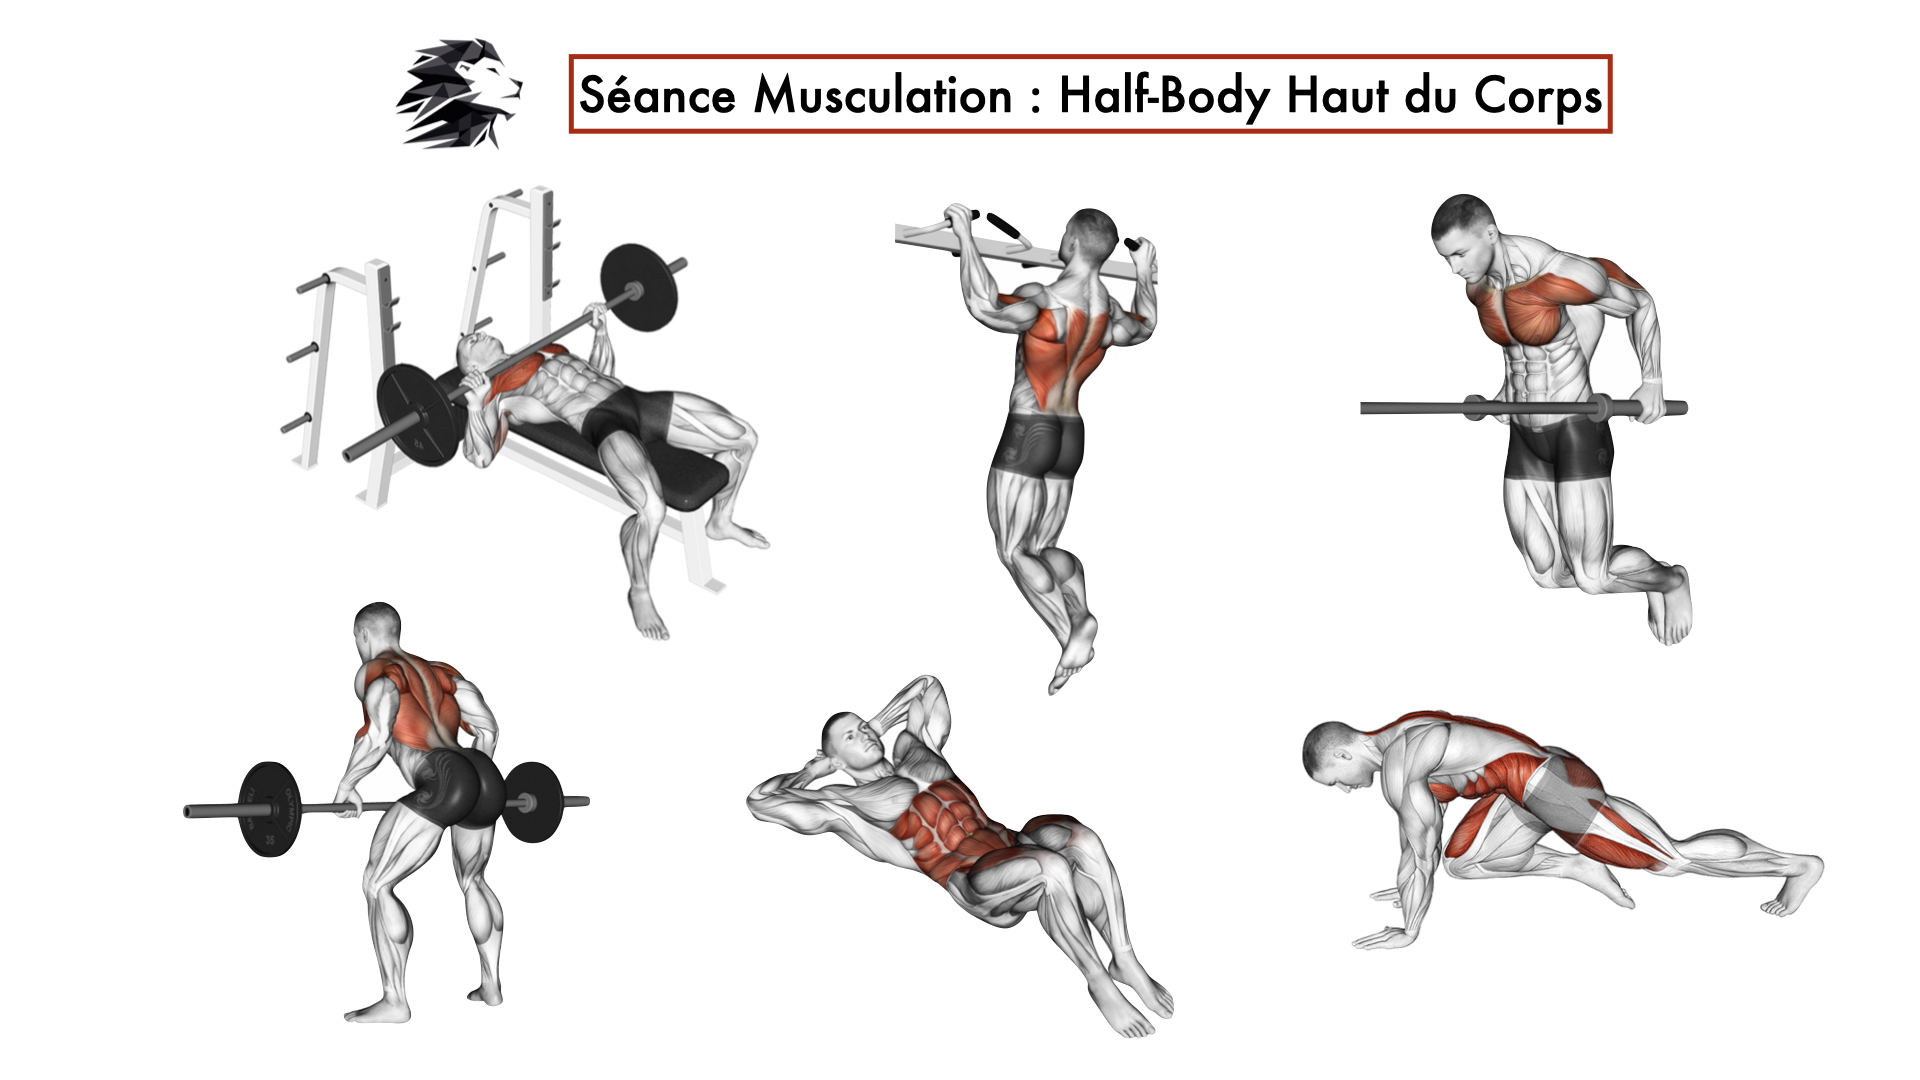 Entrainement : Guide, Exercices, Programmes de Musculation pour Sportif